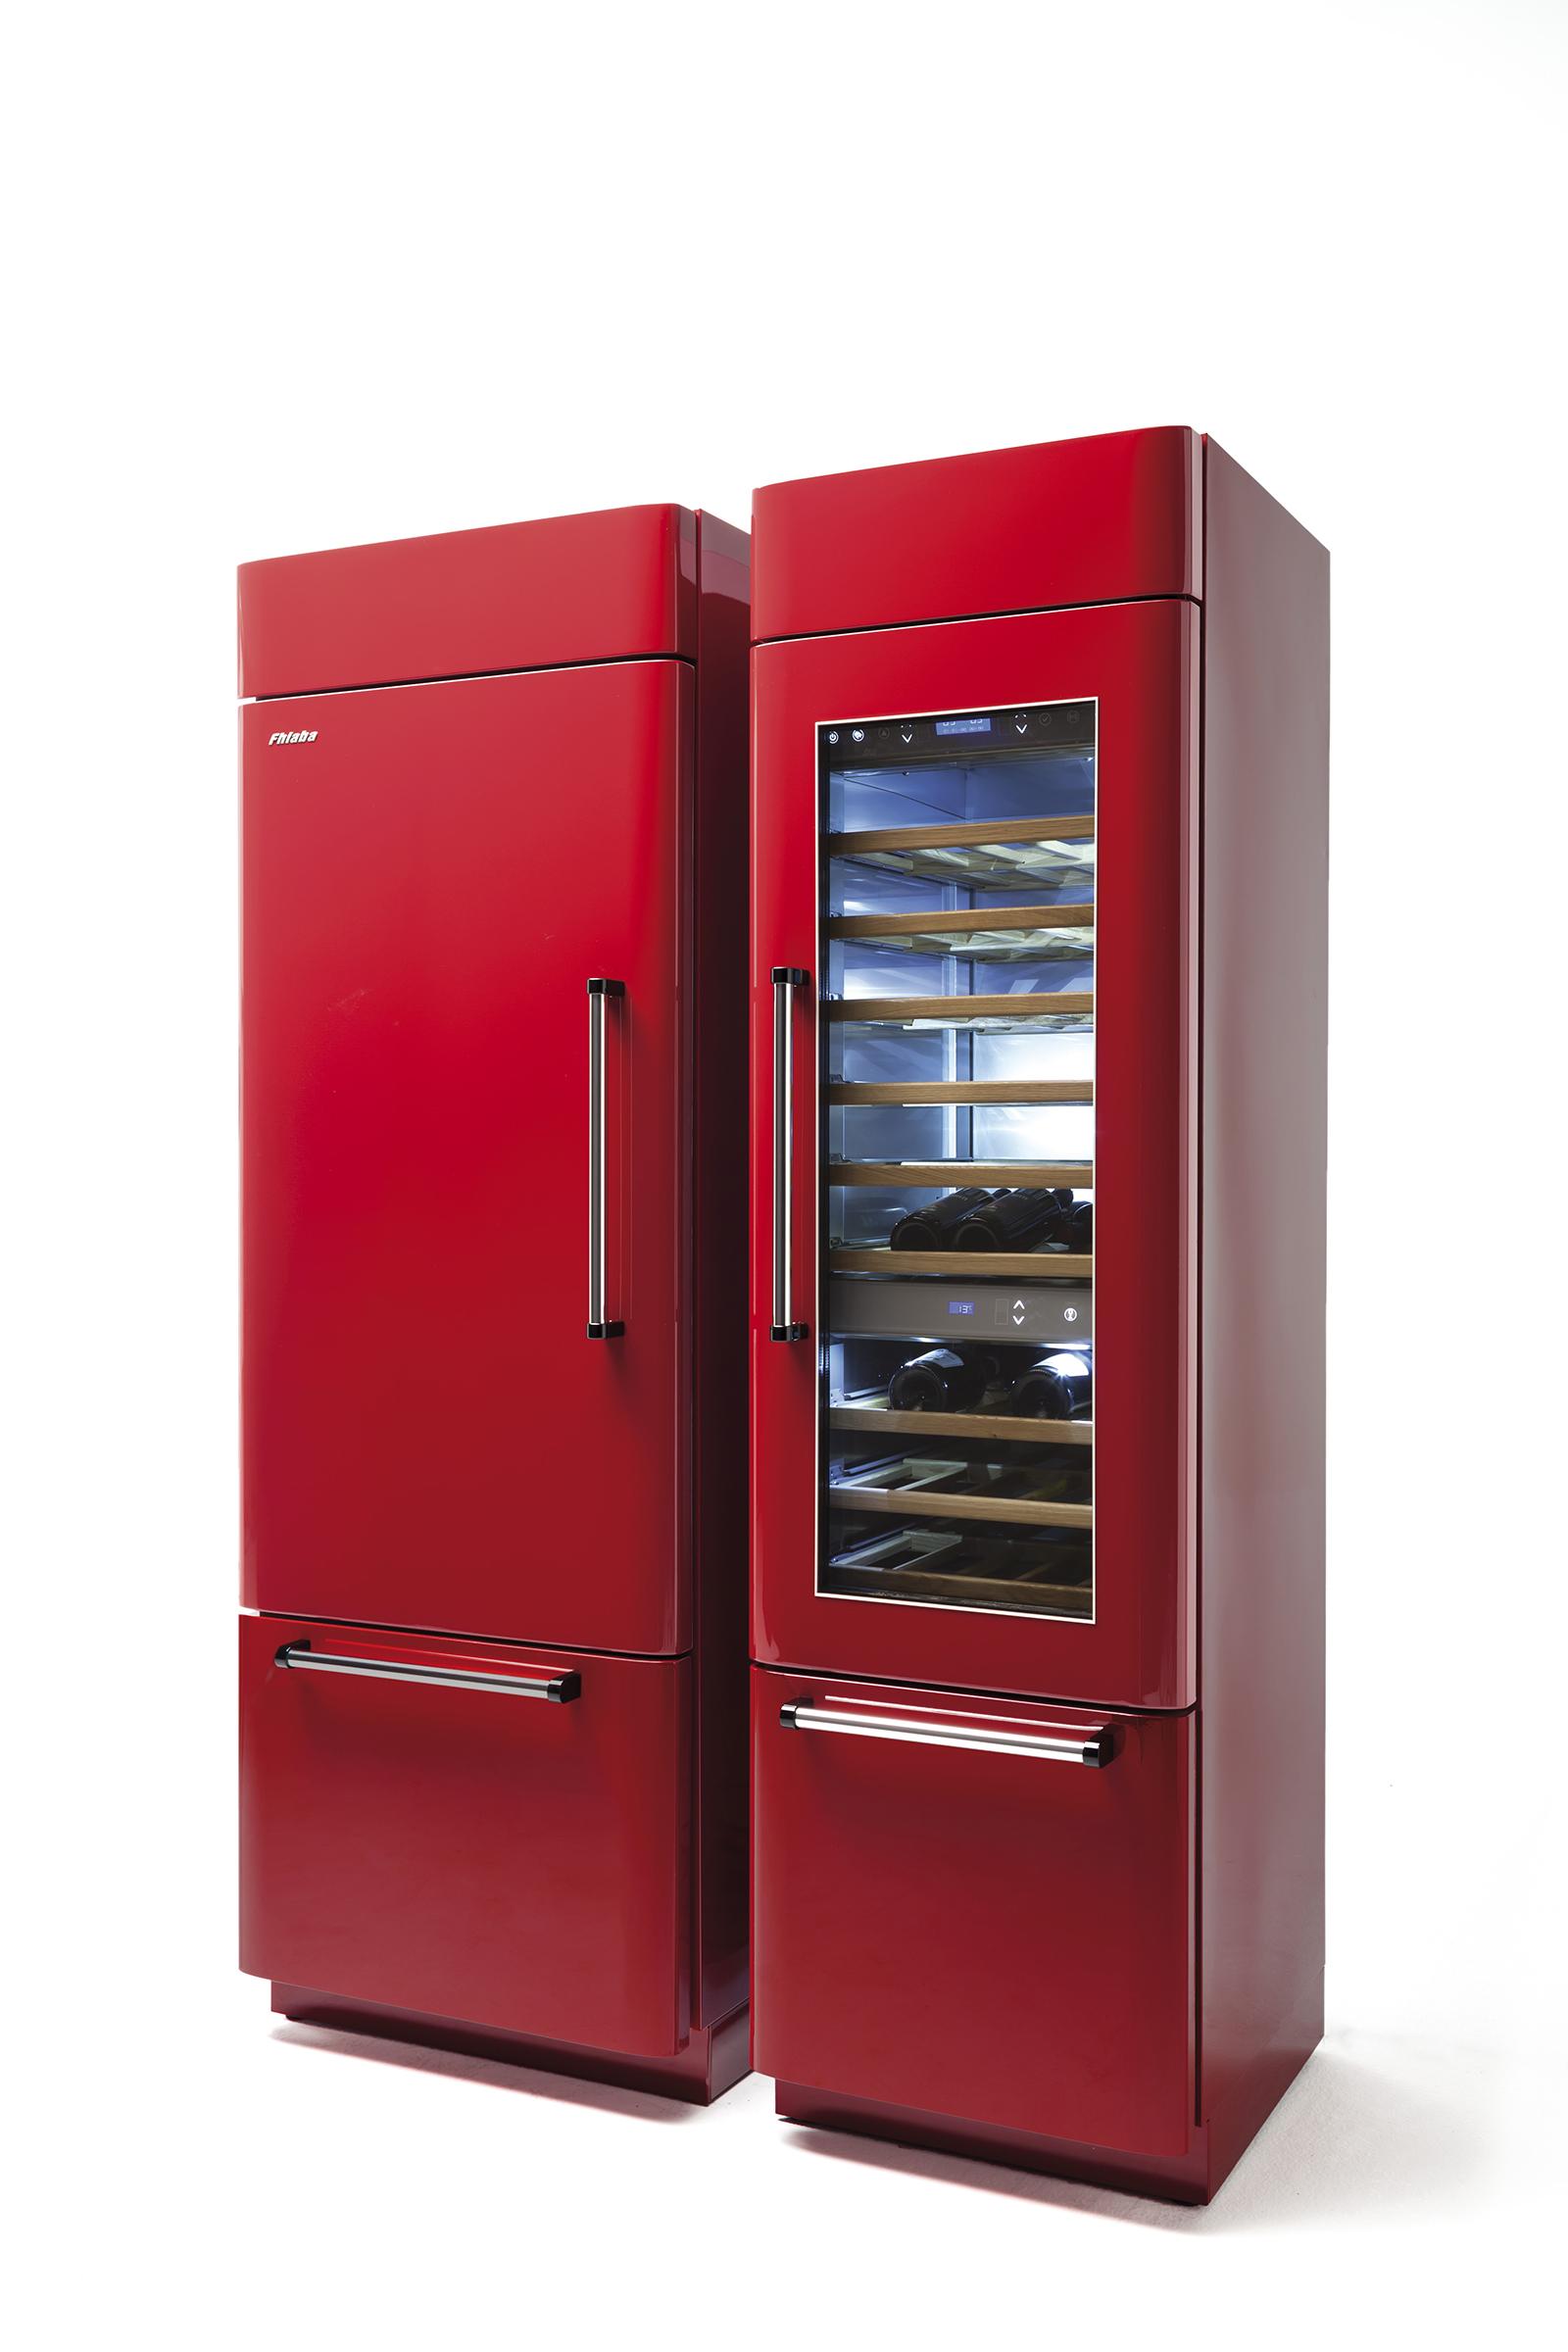 Le differenze tra frigoriferi tradizionali e frigoriferi blast chiller